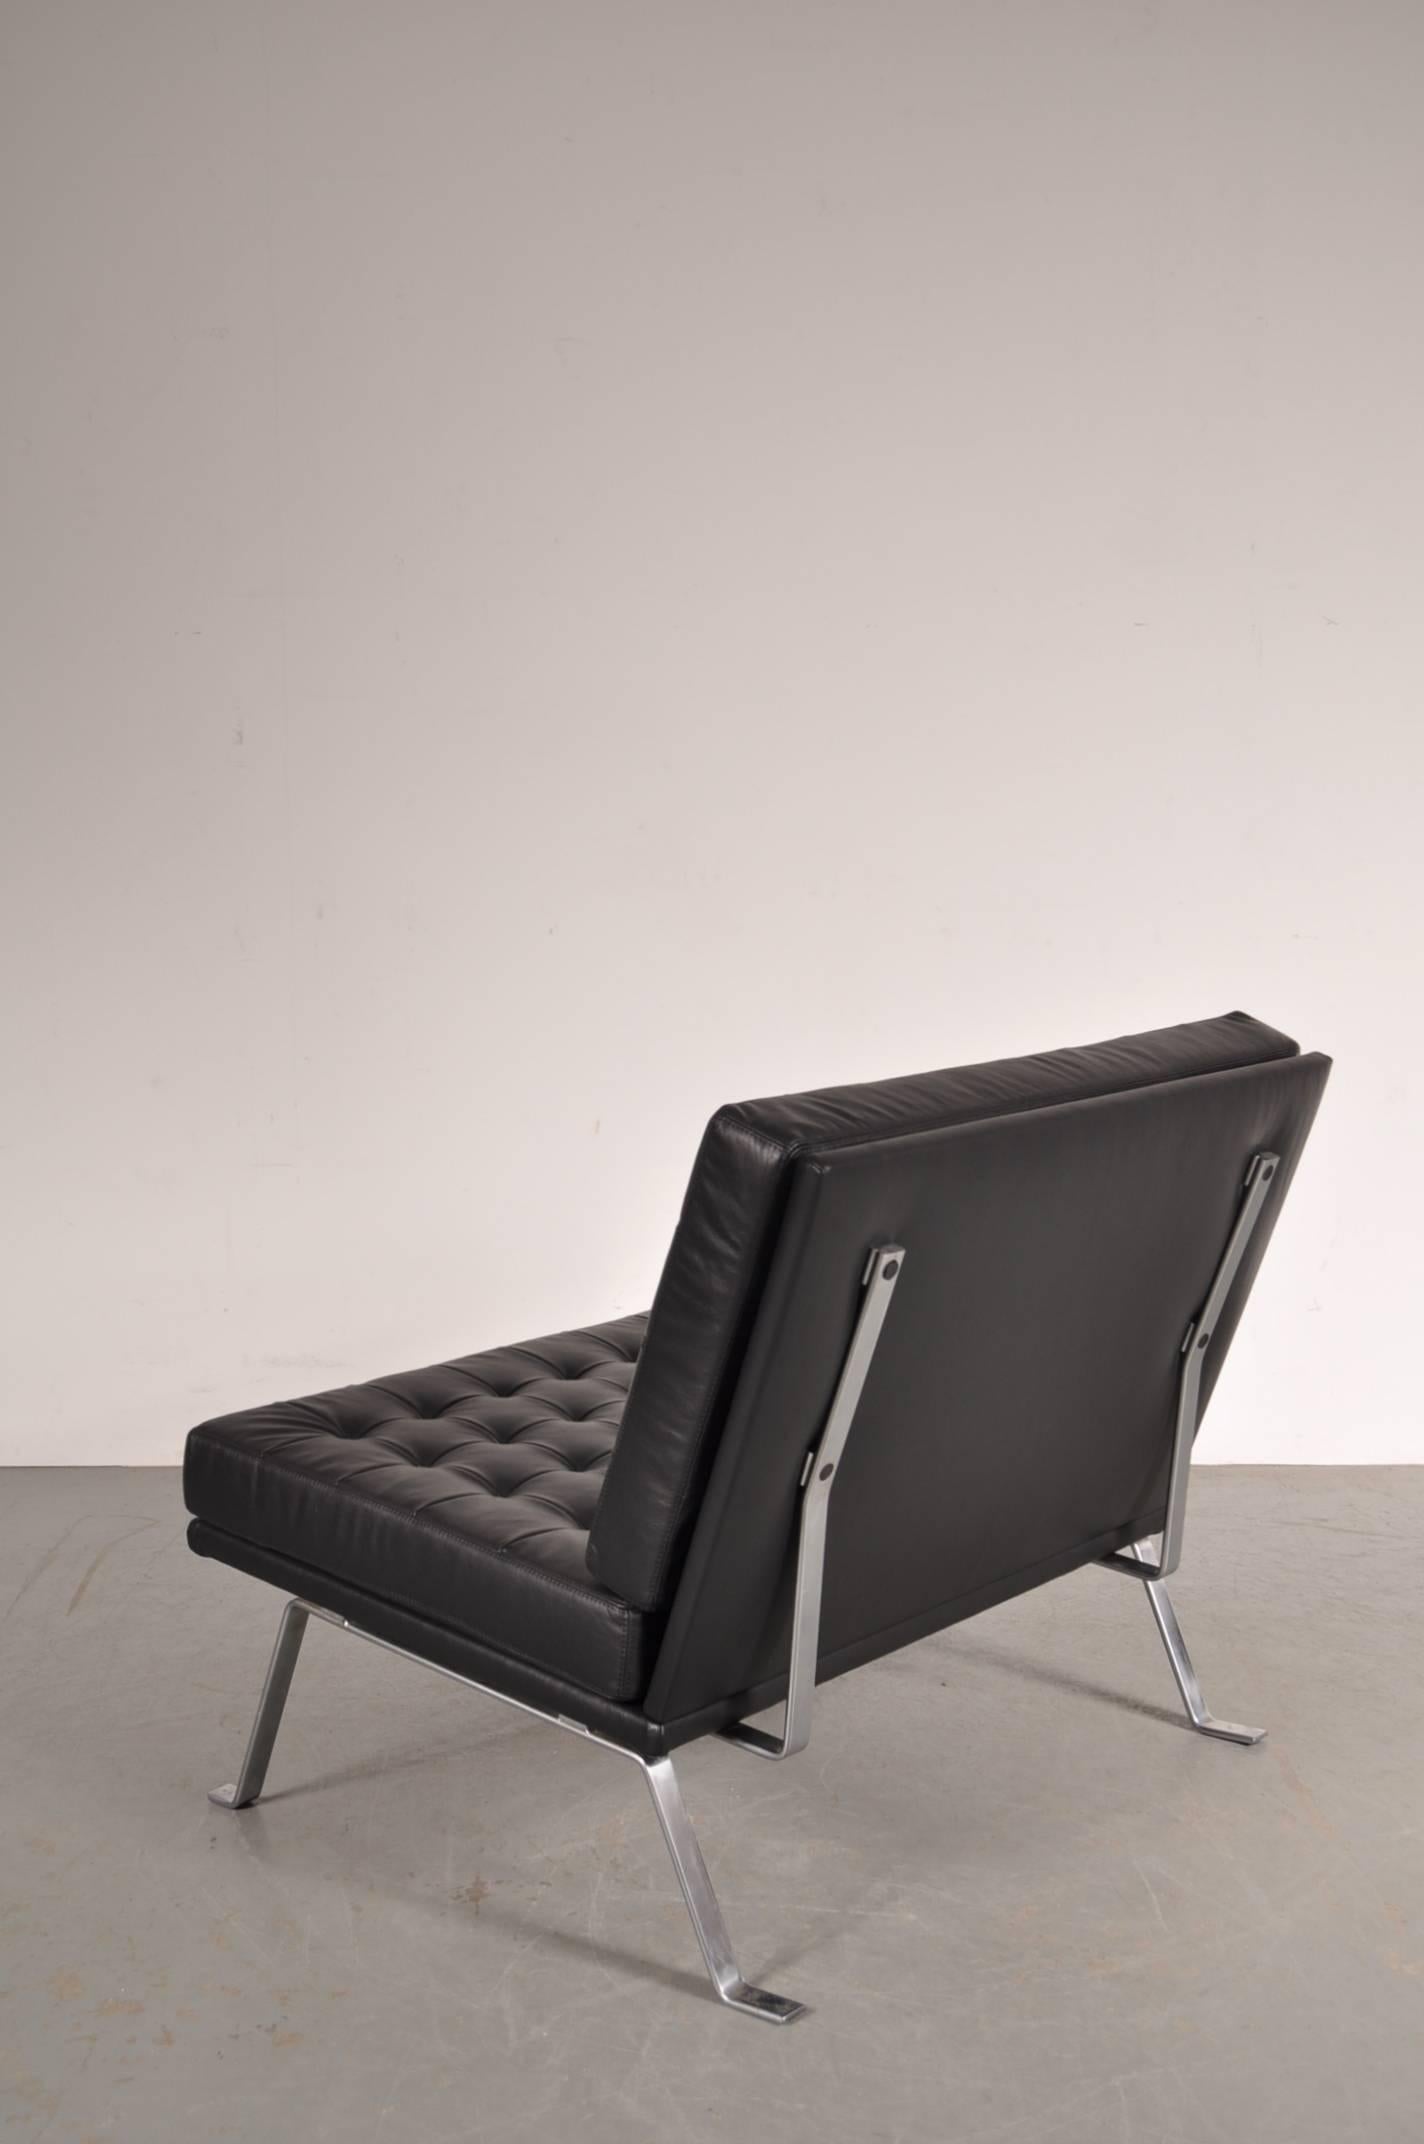 Atemberaubender Liegesessel, entworfen von Hein Salomonson, hergestellt von AP Polak, Niederlande, um 1950.

Dieser Stuhl ist dank seines schönen, minimalistischen Designs und seines hohen Sitzkomforts ein sehr beliebtes Stück Dutch Design. Er ist